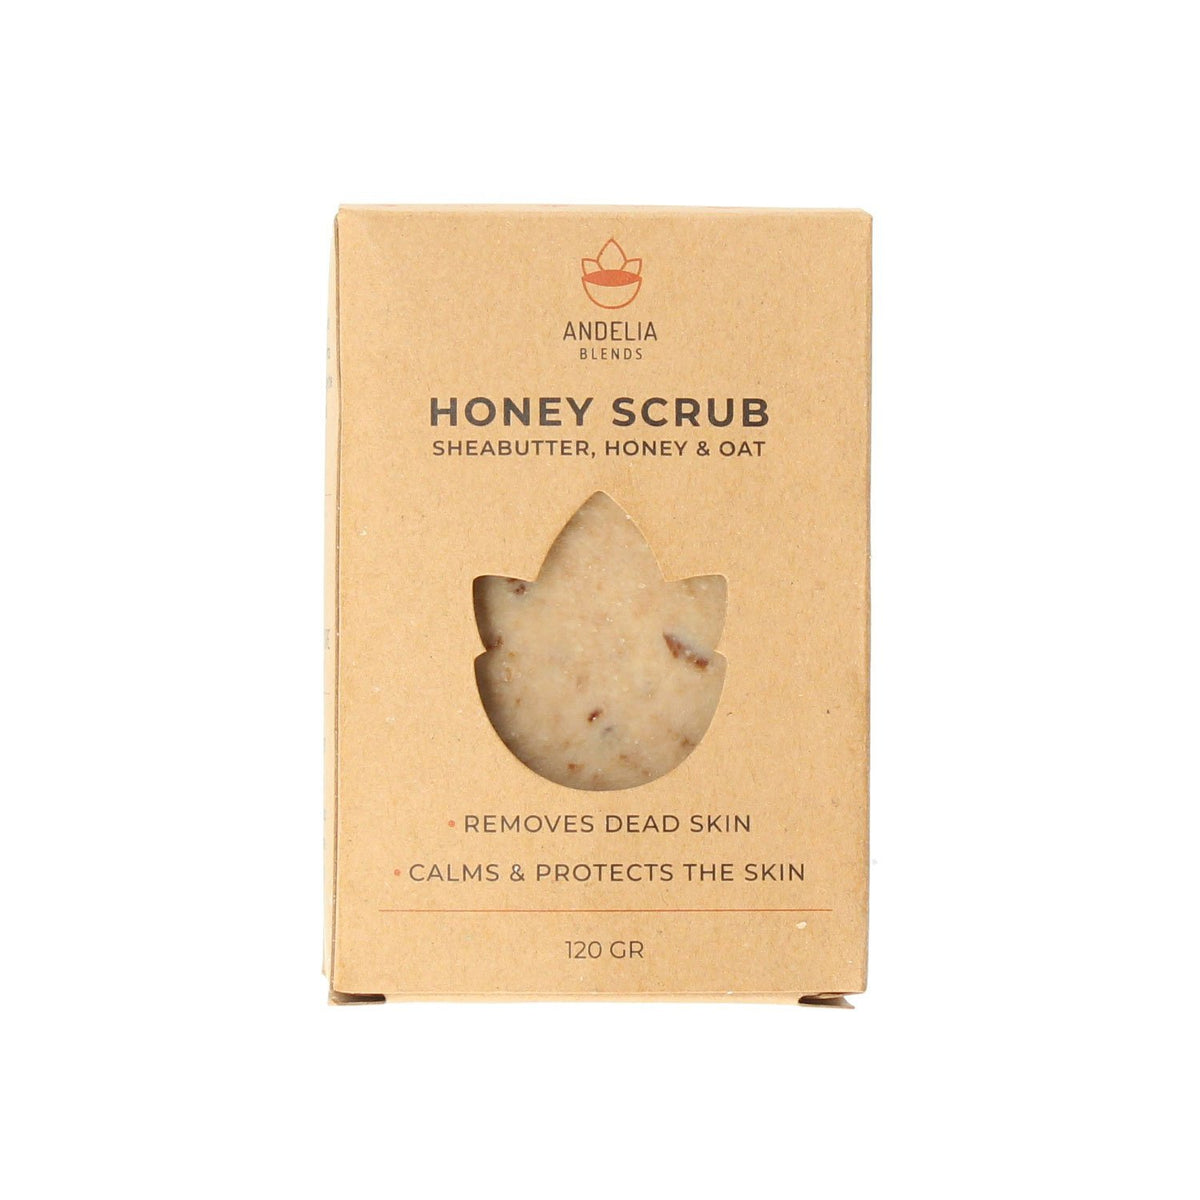 Honey Scrub soapbar | Balance - 120gr.